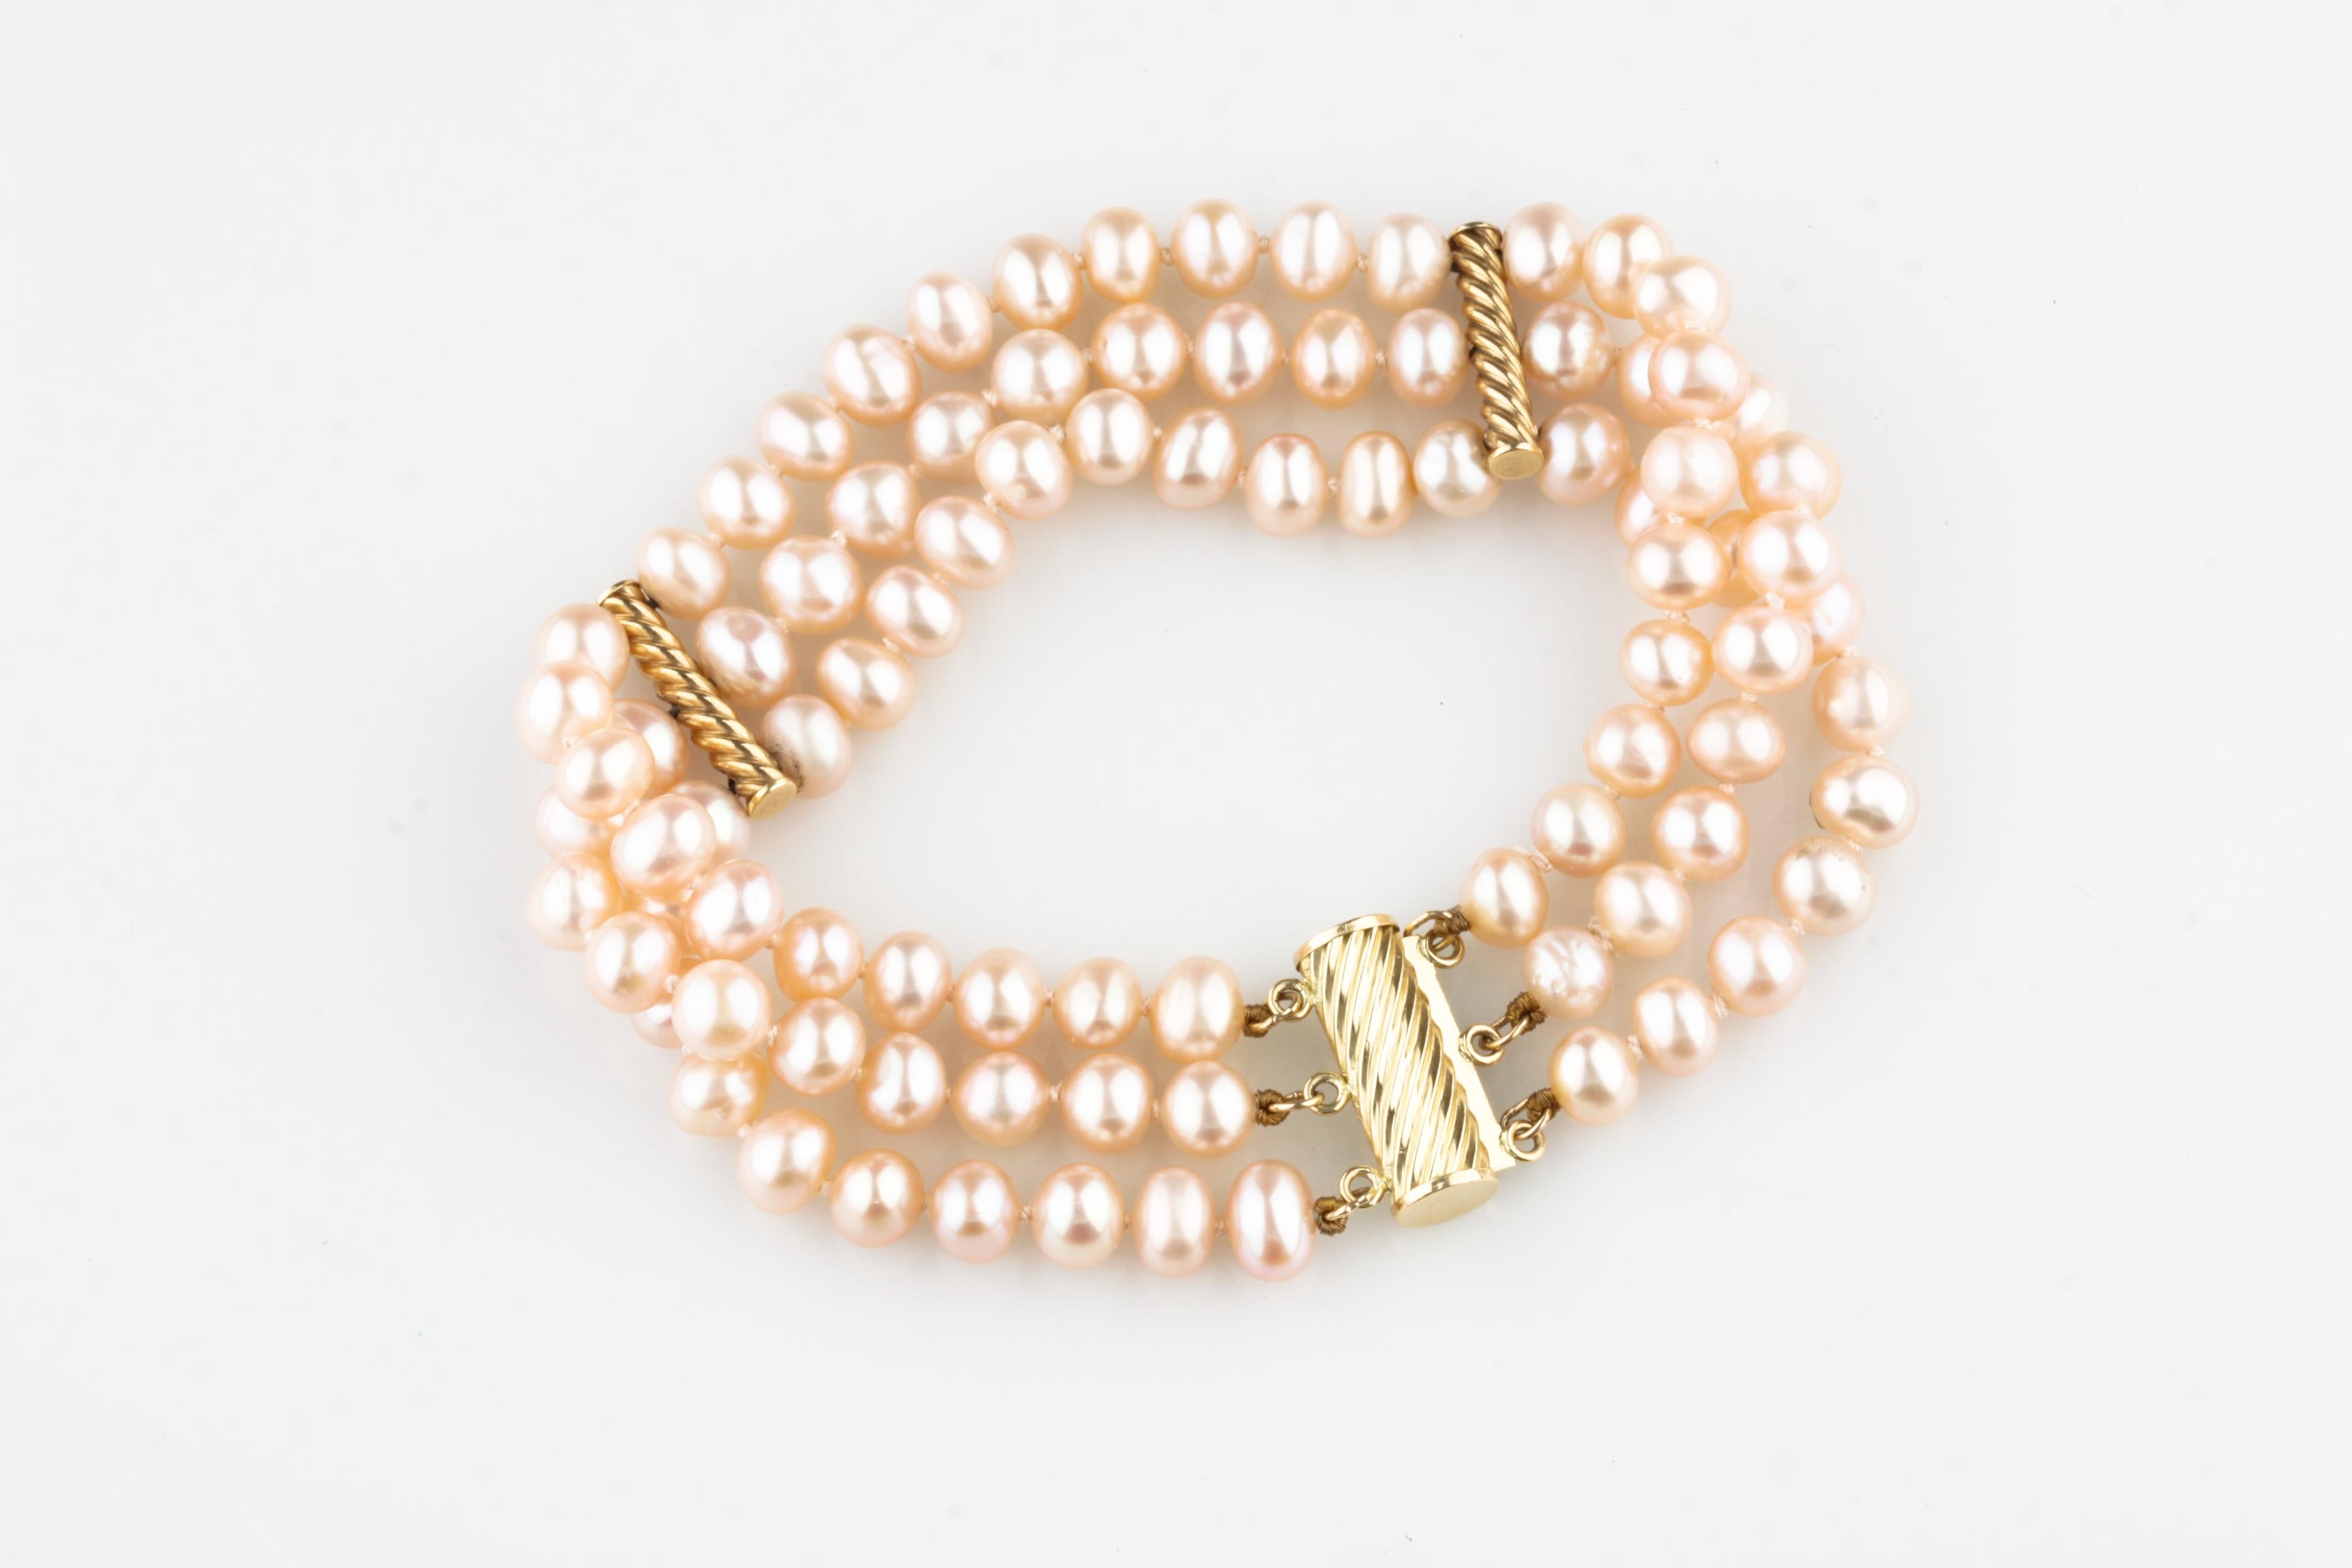 Wunderschönes dreisträngiges Perlenarmband
Mit leicht asymmetrischen Perlenketten
Rosafarben, silberner Perlmuttglanz
Durchschnittlicher Durchmesser der Perlen = 5 - 6 mm
Inklusive 14k Gelbgold Twist Akzente und Schließe
Gesamtmasse = 25,2